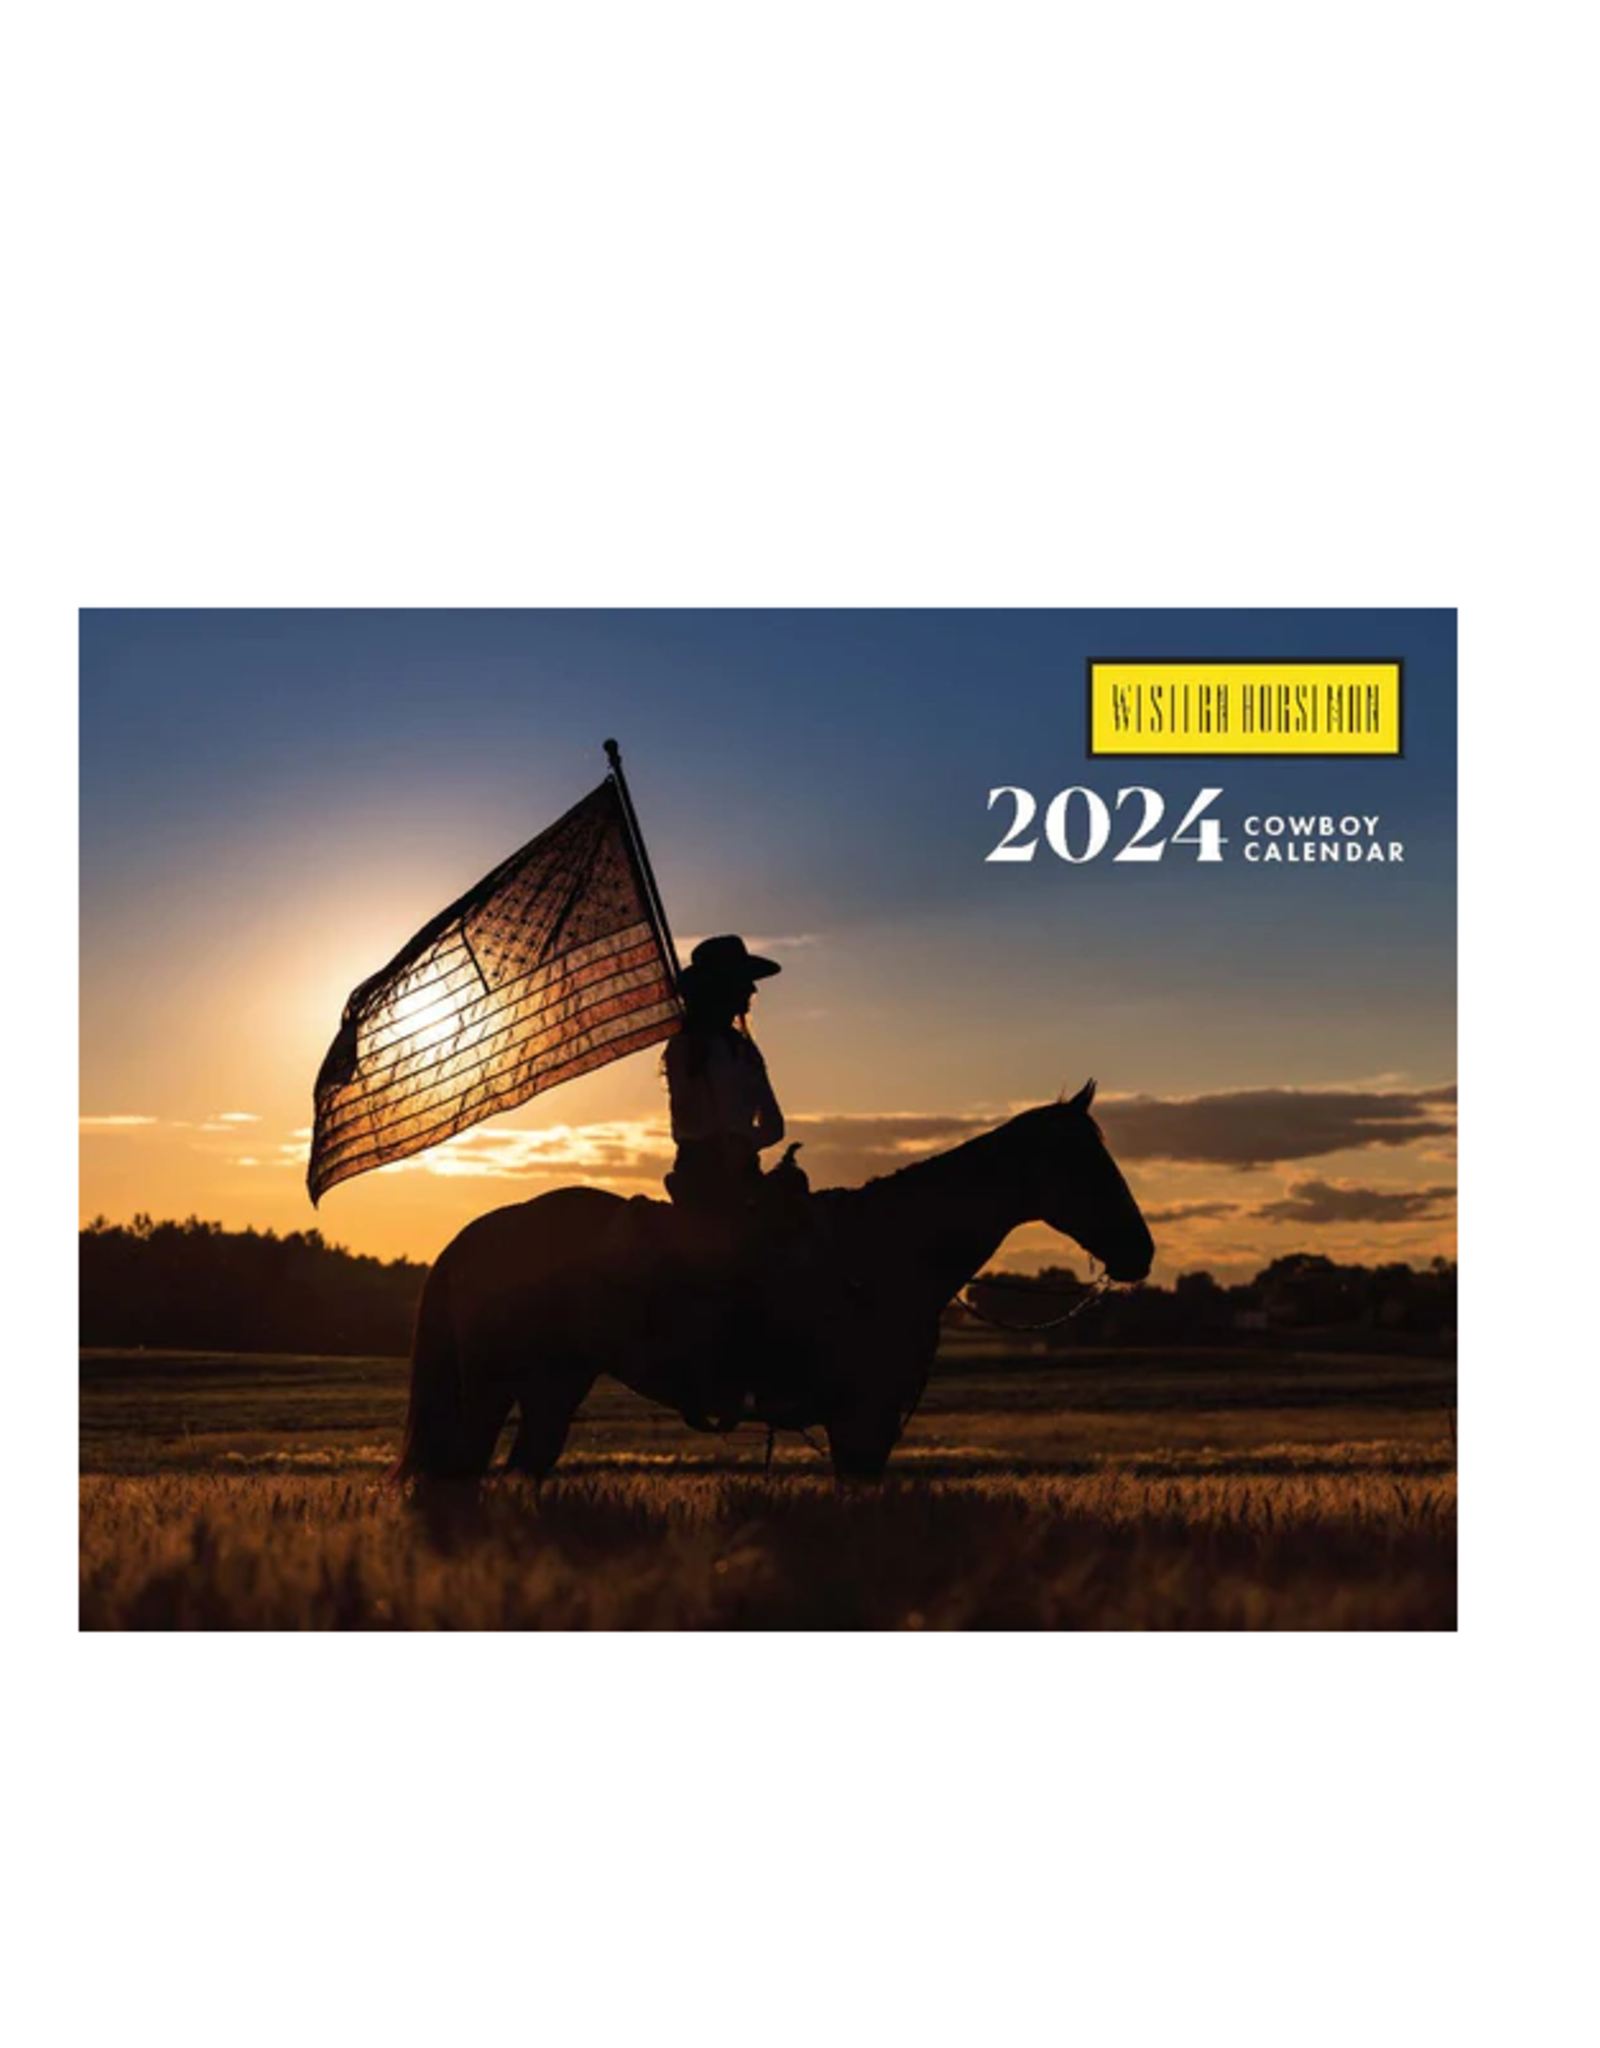 Cowboy Boots Calendar 2024 - 2025: Jan 2024 to Dec 2025, Bonus 6